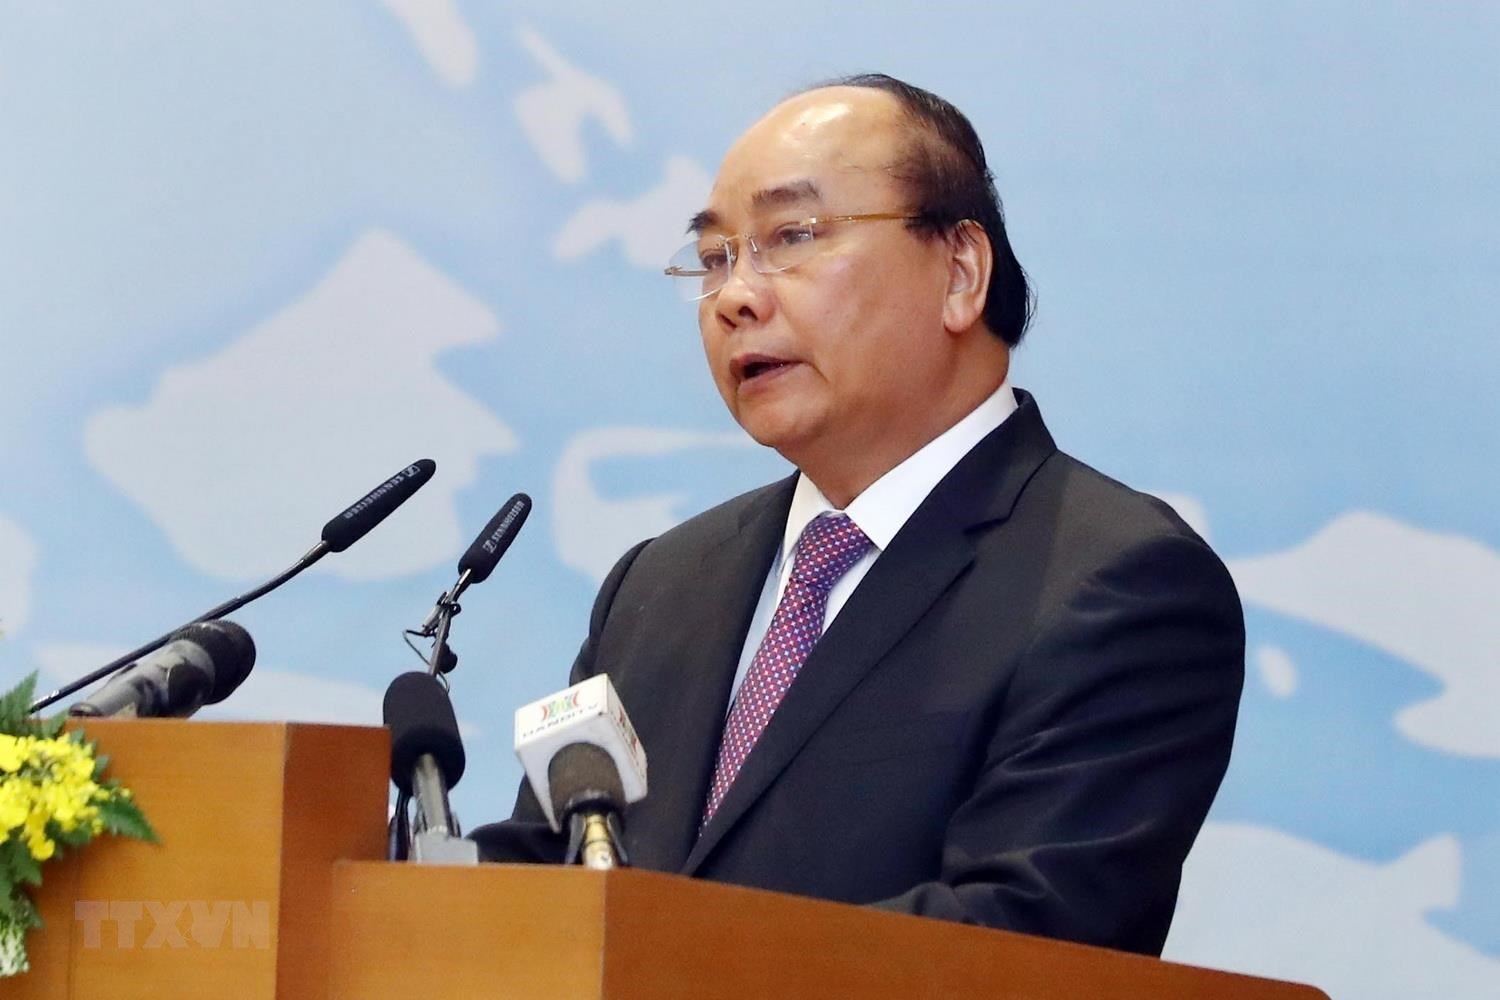 Thư của Thủ tướng Nguyễn Xuân Phúc gửi cộng đồng người Việt Nam ở nước ngoài